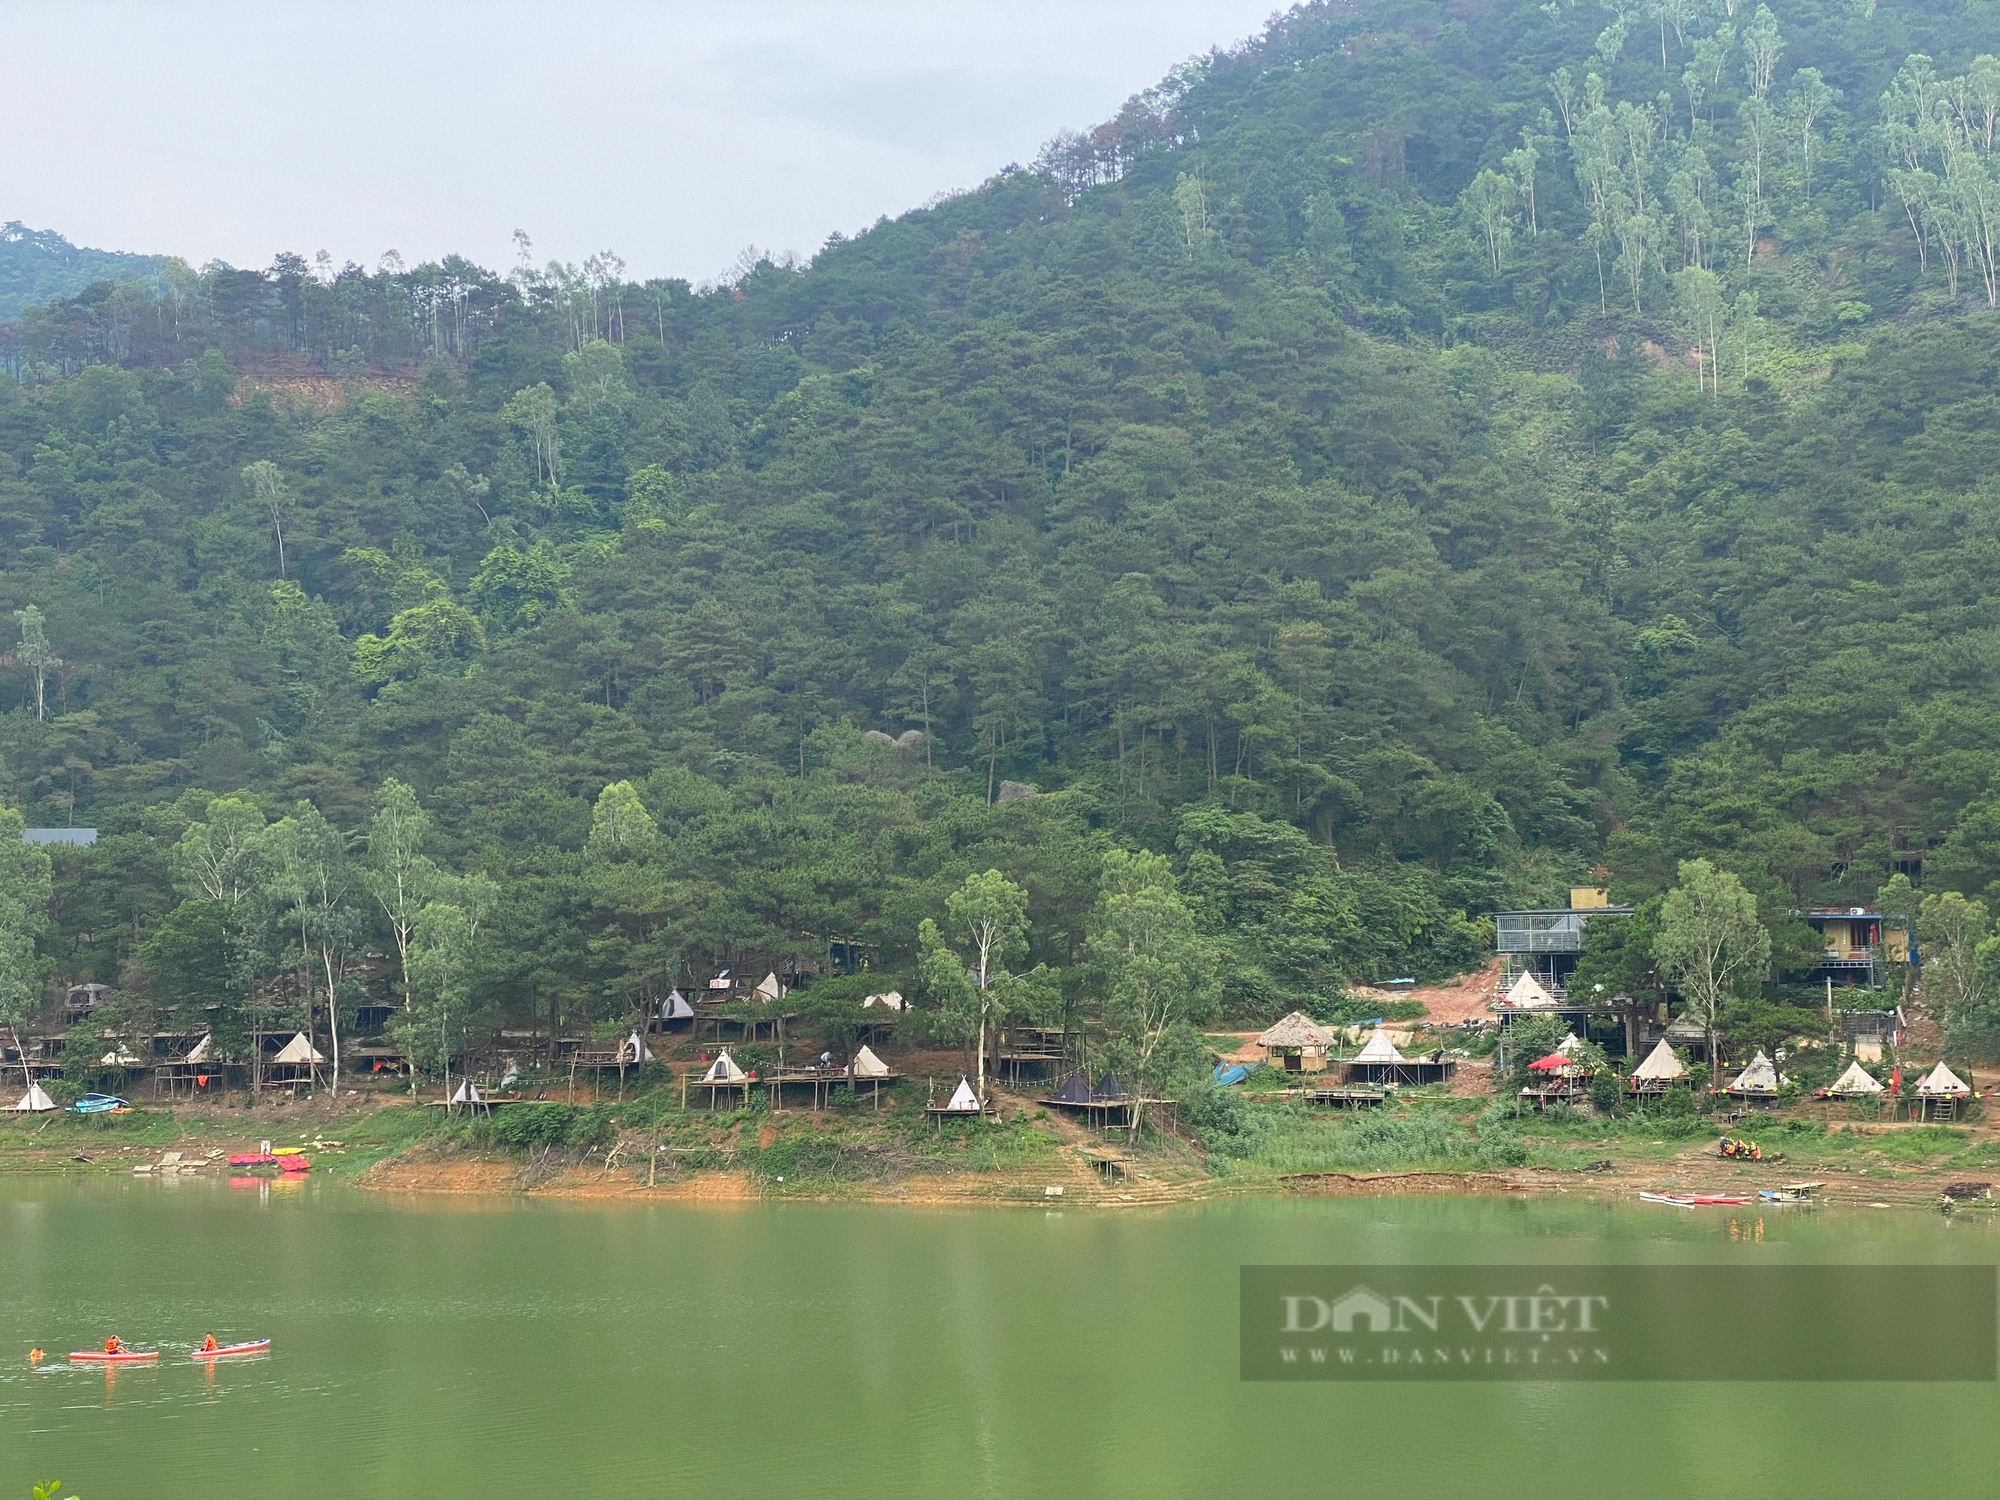 Hà Nội: Dỡ bỏ hơn 200 lều lán dựng trái phép trên rừng phòng hộ Sóc Sơn - Ảnh 2.